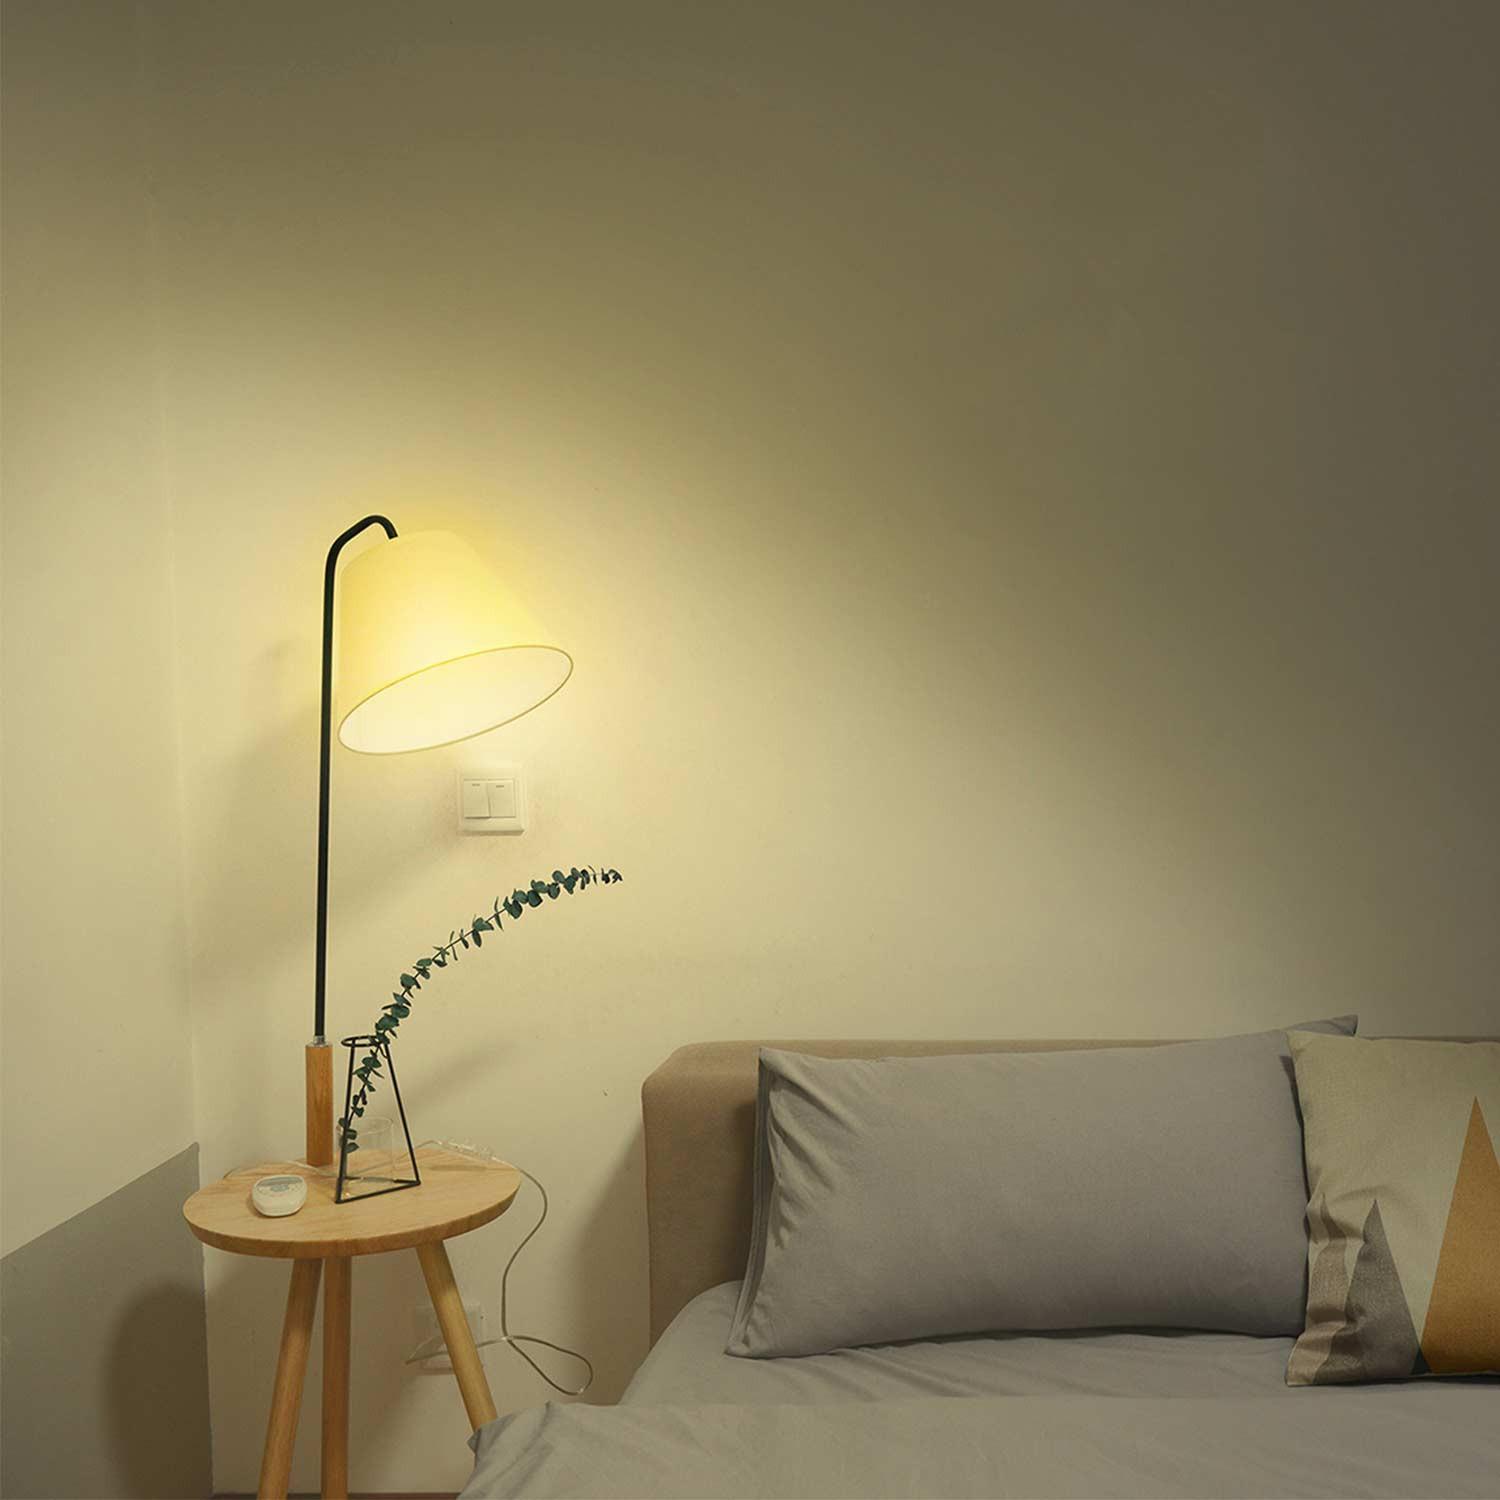 Hombli Smart Bulb E27 White-Lampe 2er-Set + gratis Smart Bulb E27 White 2er-Set - Weißlicht im Wohnzimmer